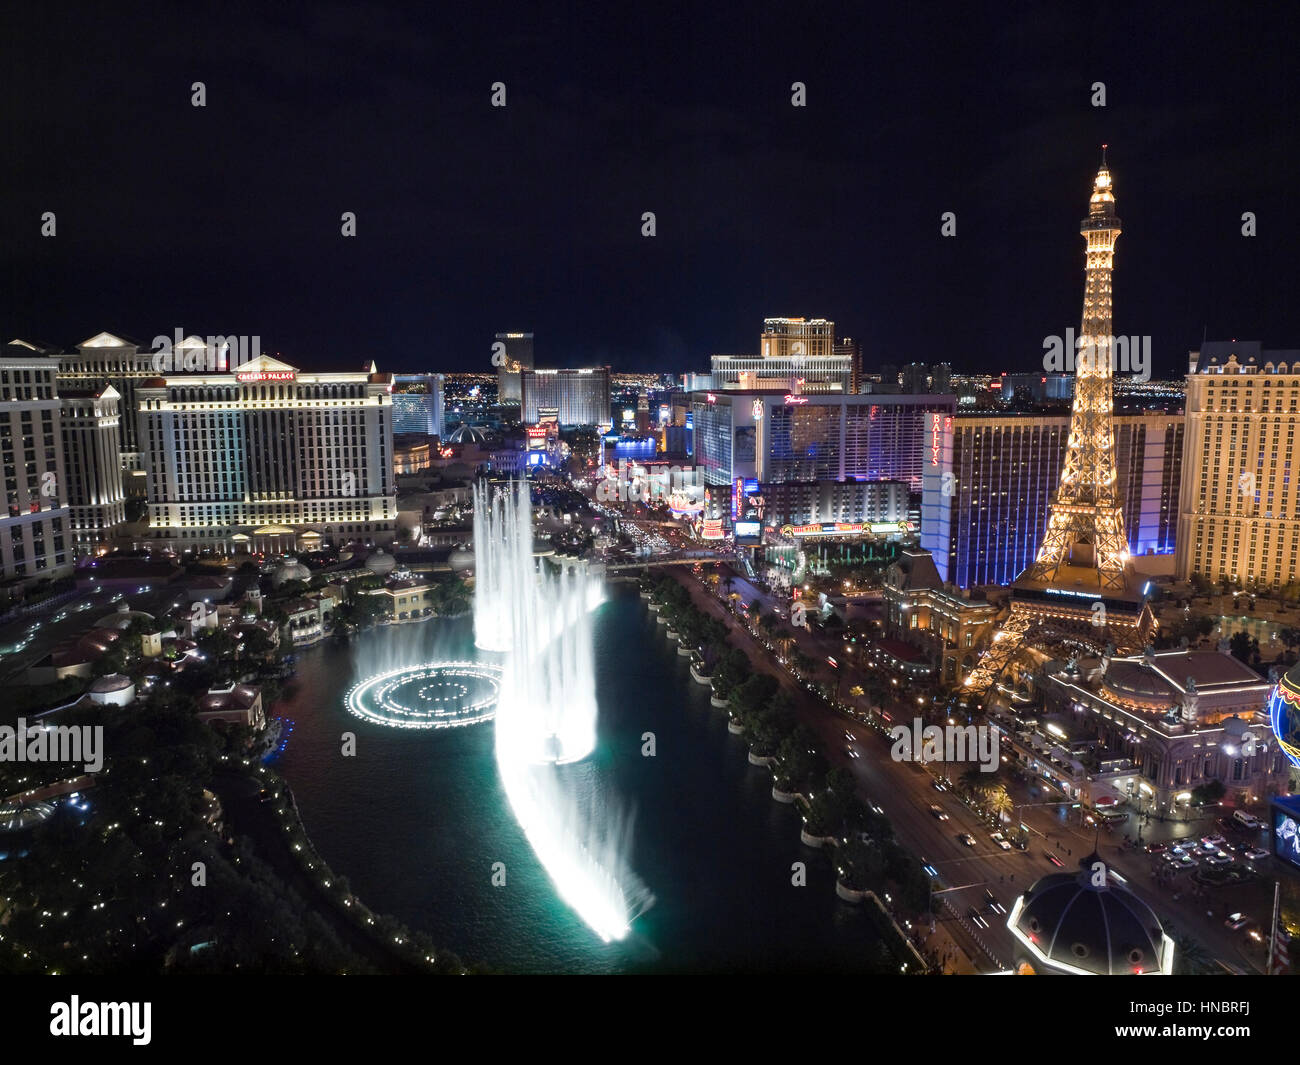 Las Vegas, Nevada, Stati Uniti d'America - 6 Ottobre 2011: vista notturna verso Bellagio, Parigi, il Caesars Palace e altri resort sulla Strip di Las Vegas. Foto Stock